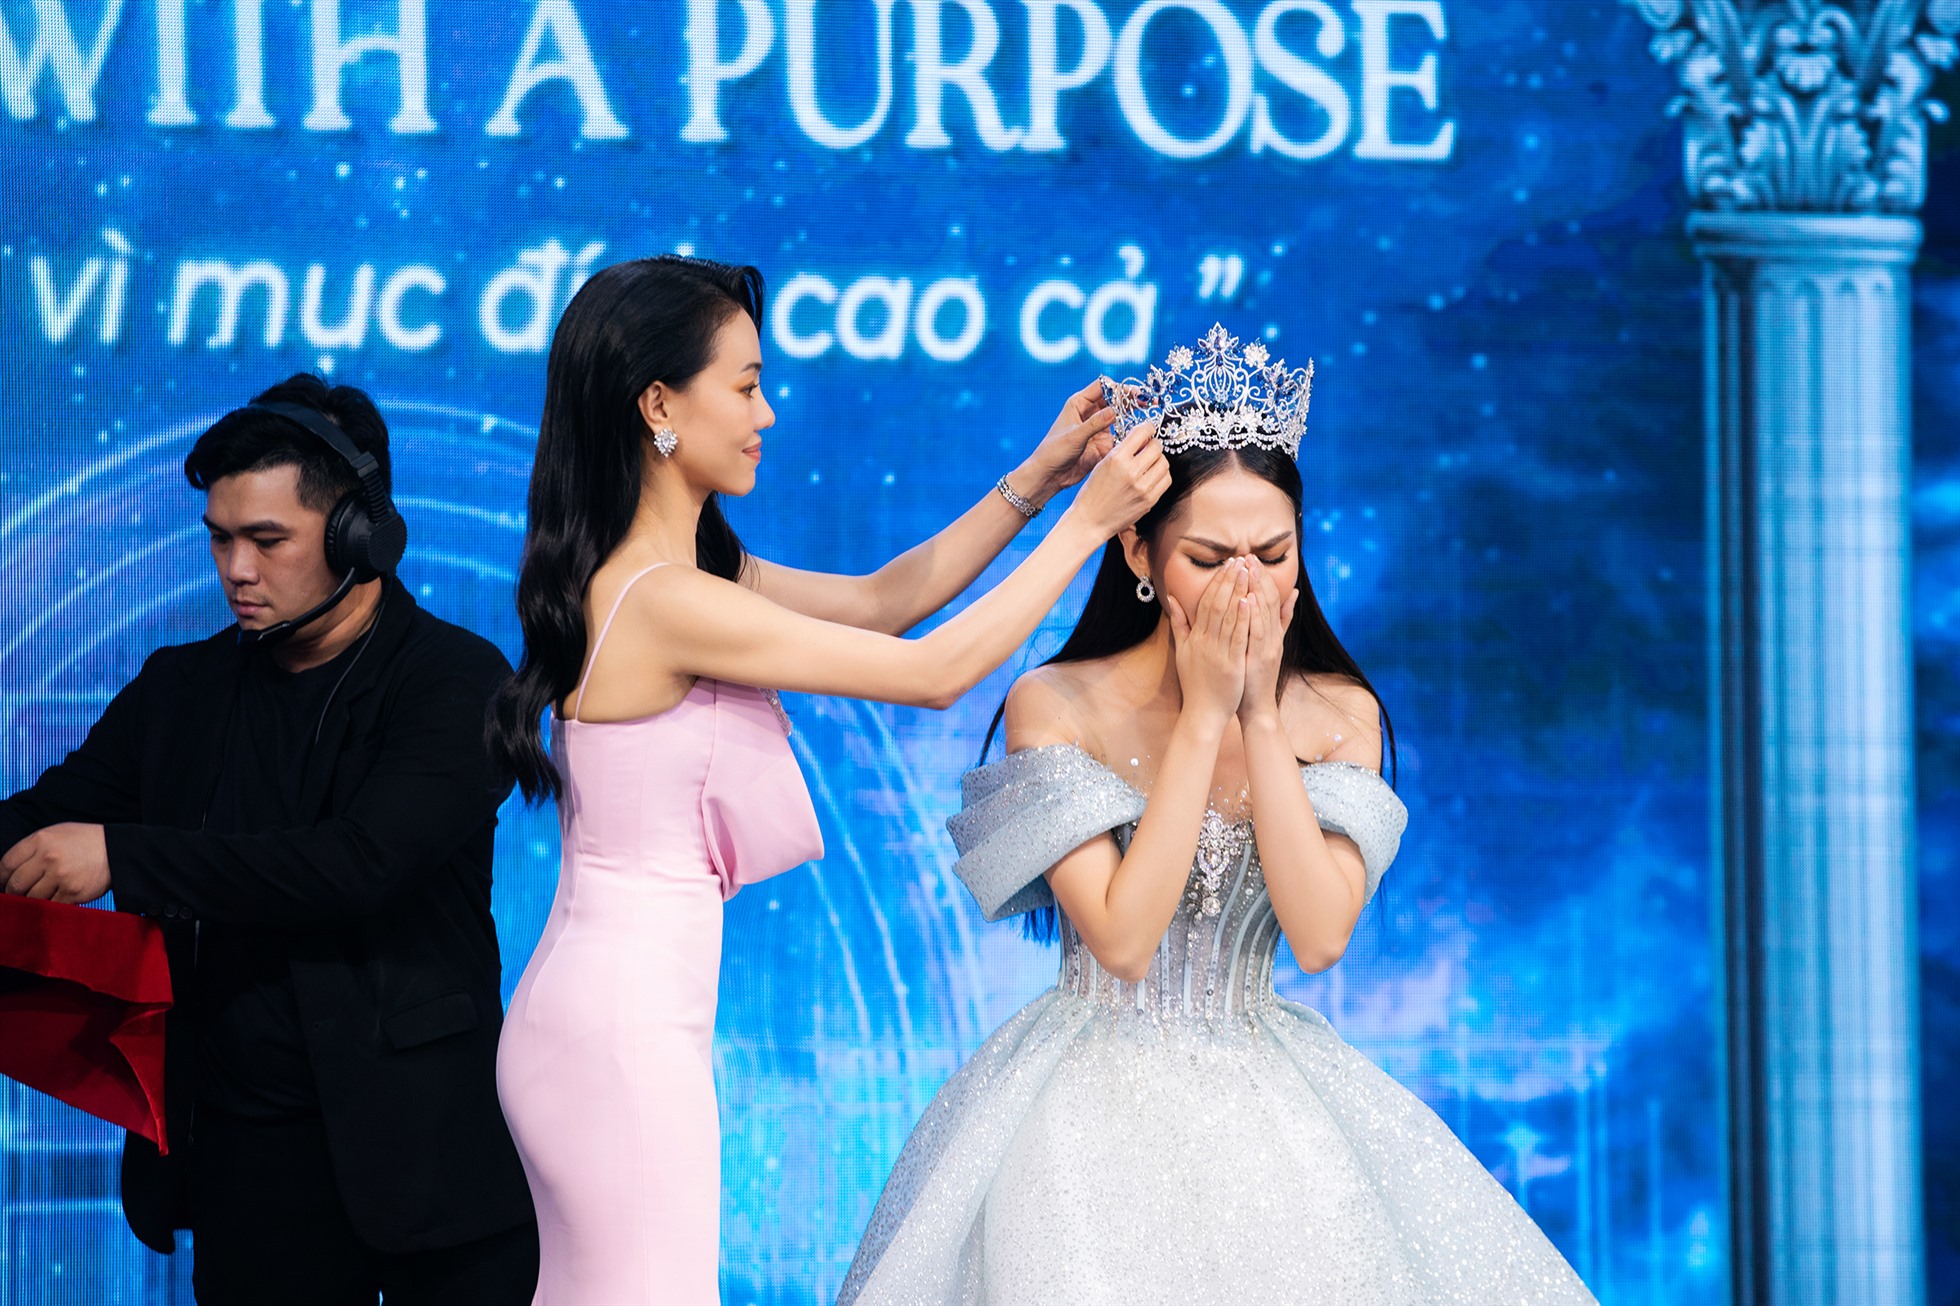 Hoa hậu Mai Phương đấu giá thành công vương miện “Ocean Lotus” với gái 3 tỉ đồng. Ảnh: BTC.